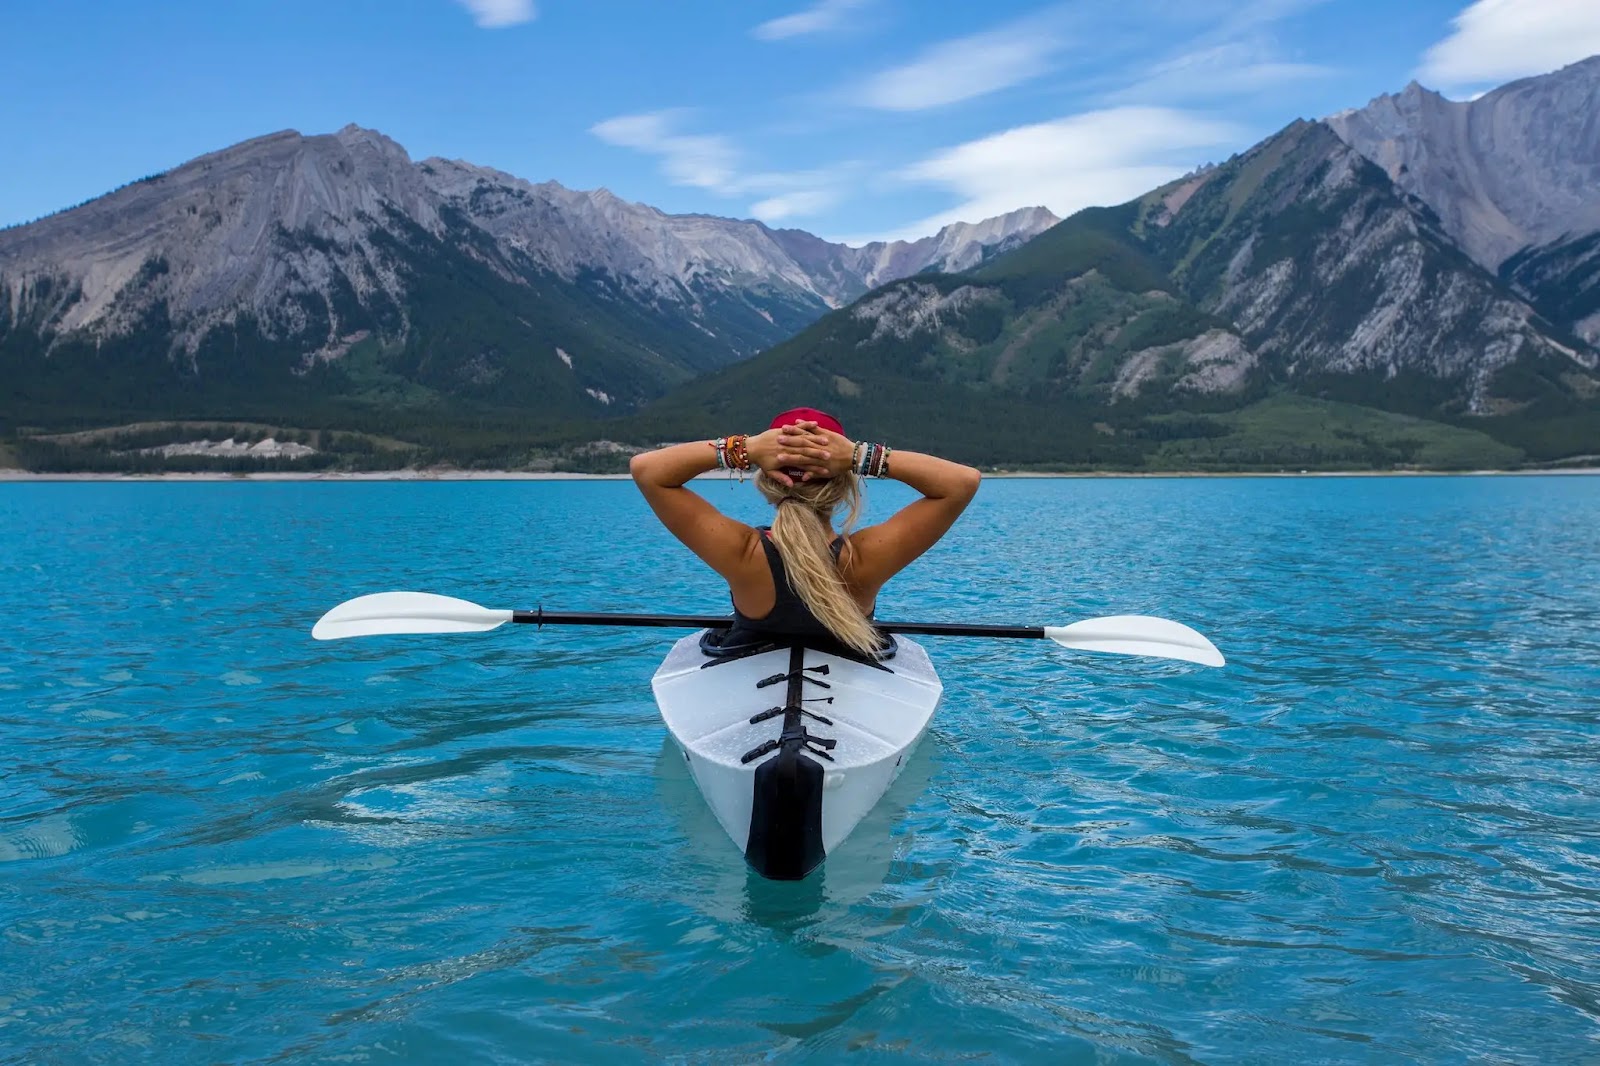 Woman in kayak on blue waters